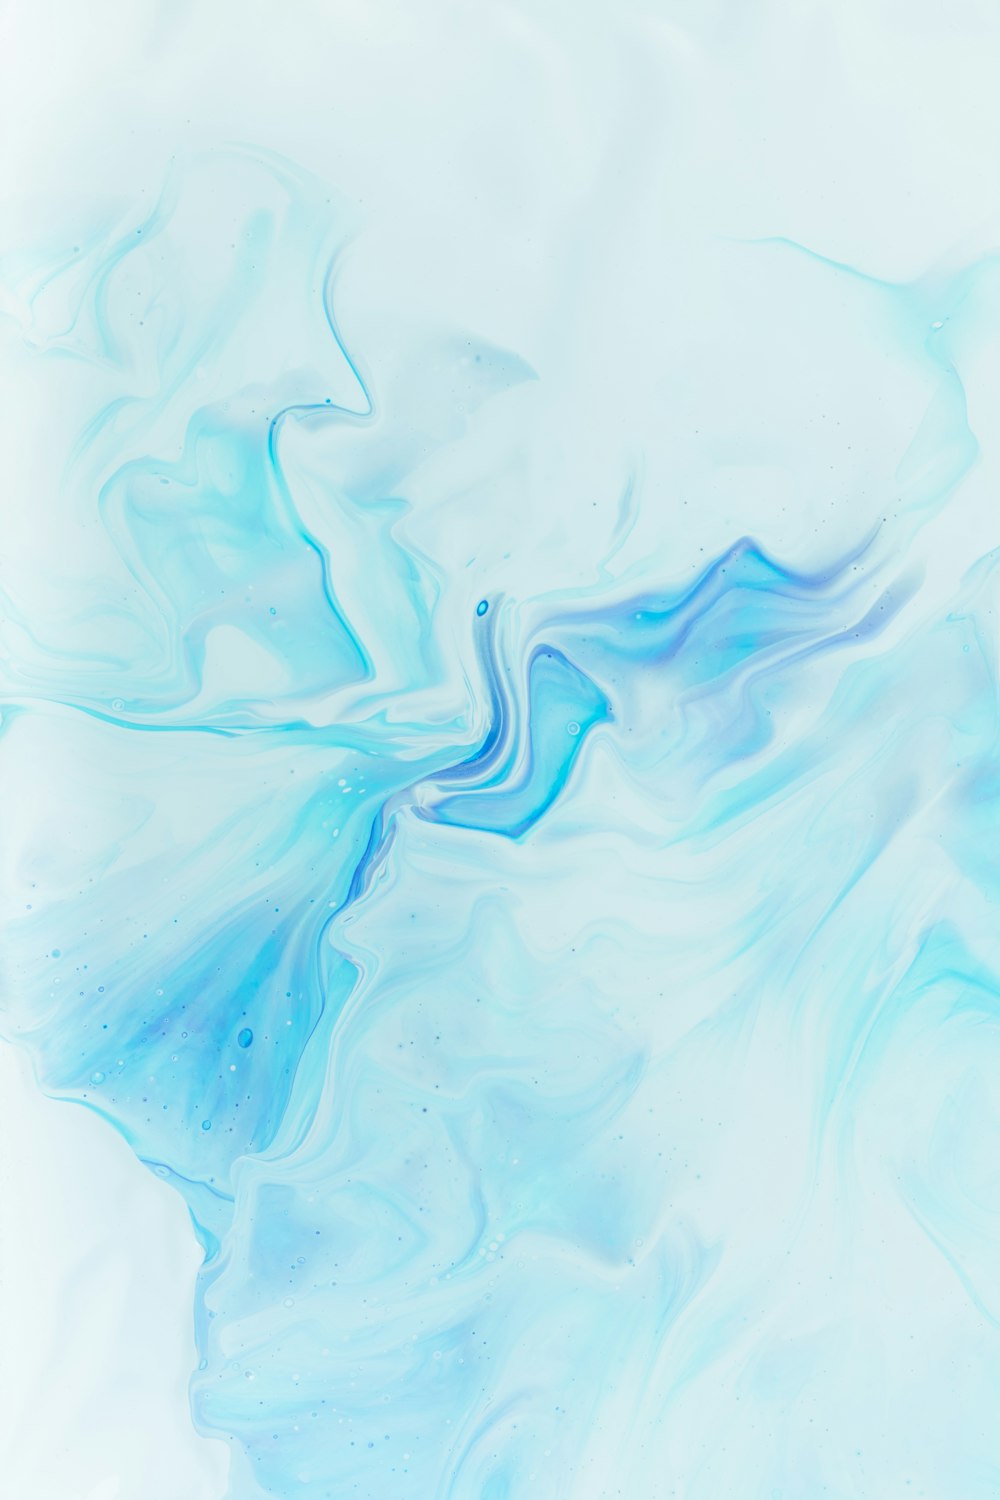 30k+ imágenes de azul pastel | Descargar imágenes gratis en Unsplash